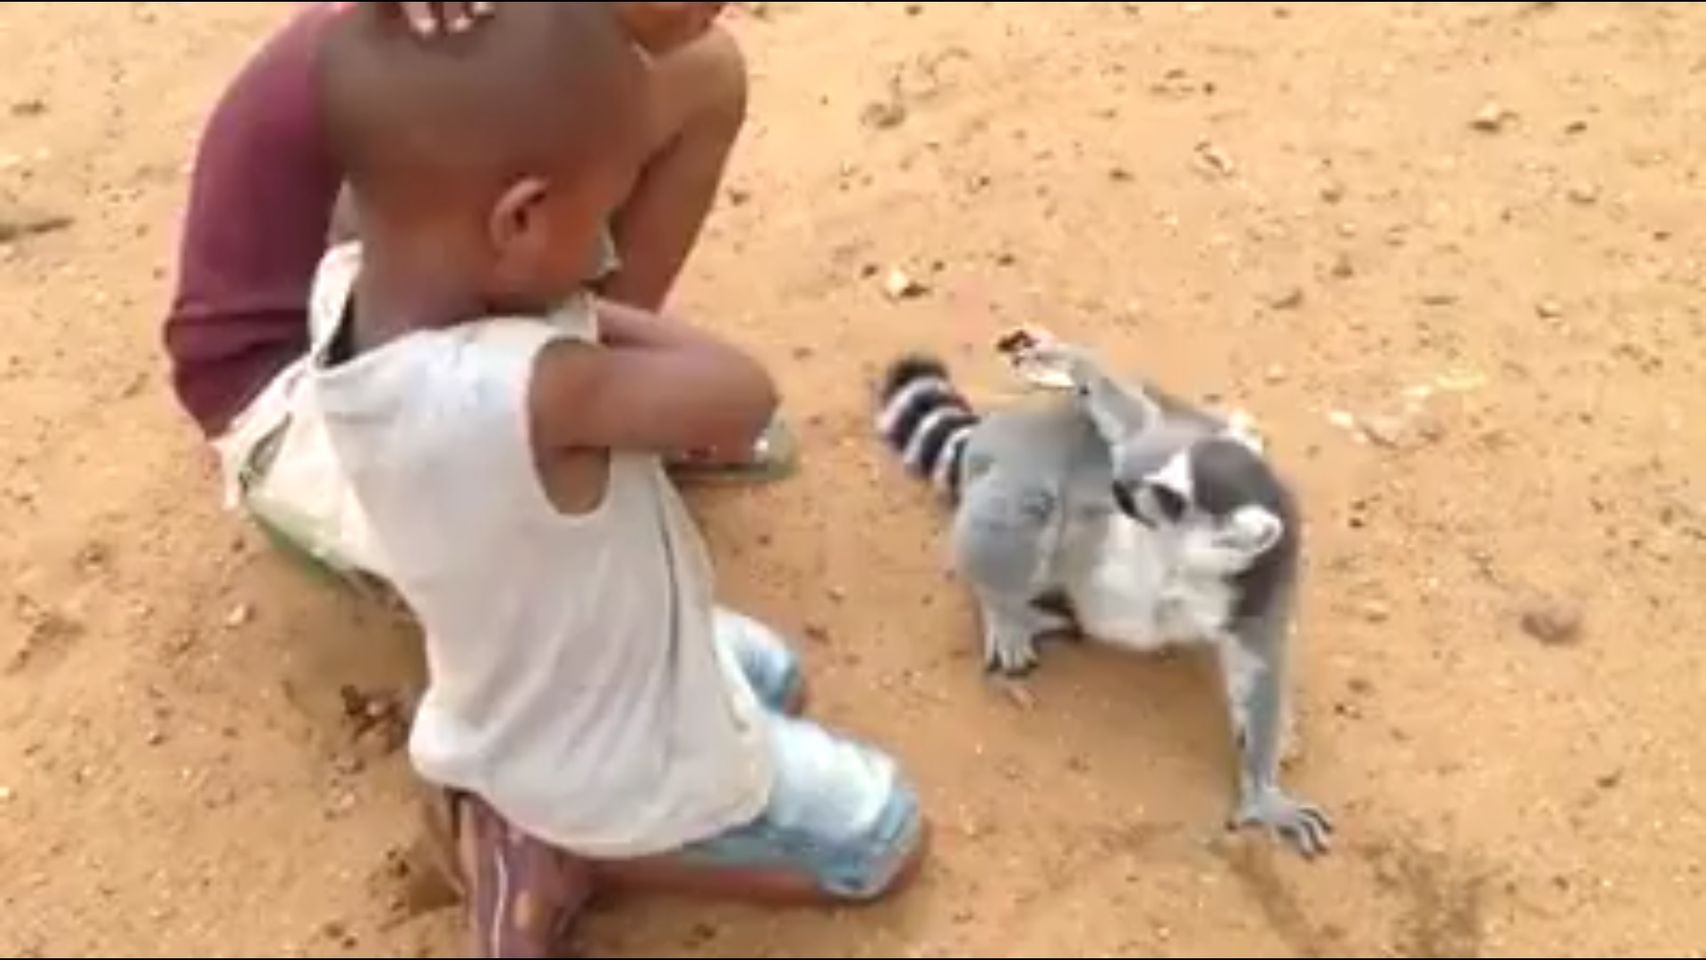  (Video) El lémur que pide a niños que le rasquen la espalda